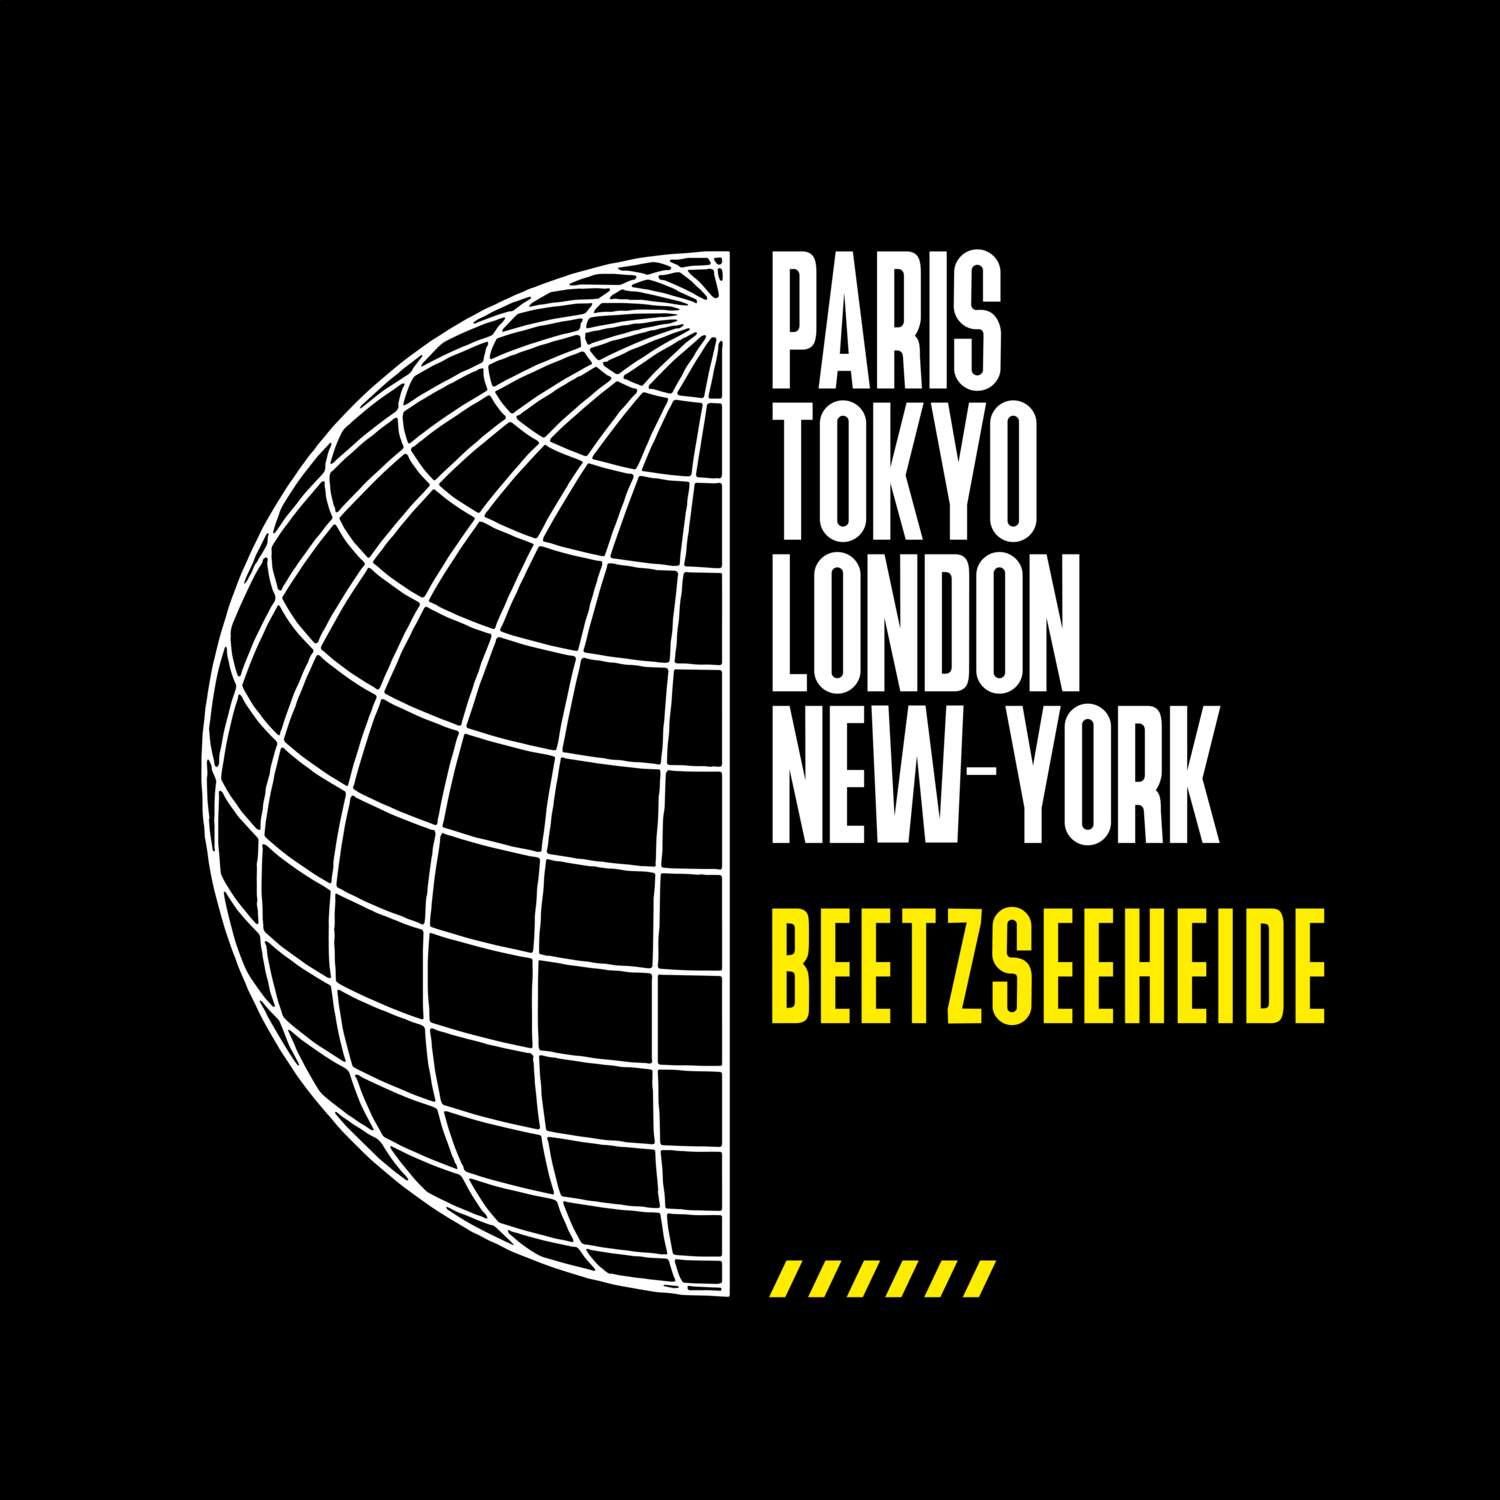 Beetzseeheide T-Shirt »Paris Tokyo London«